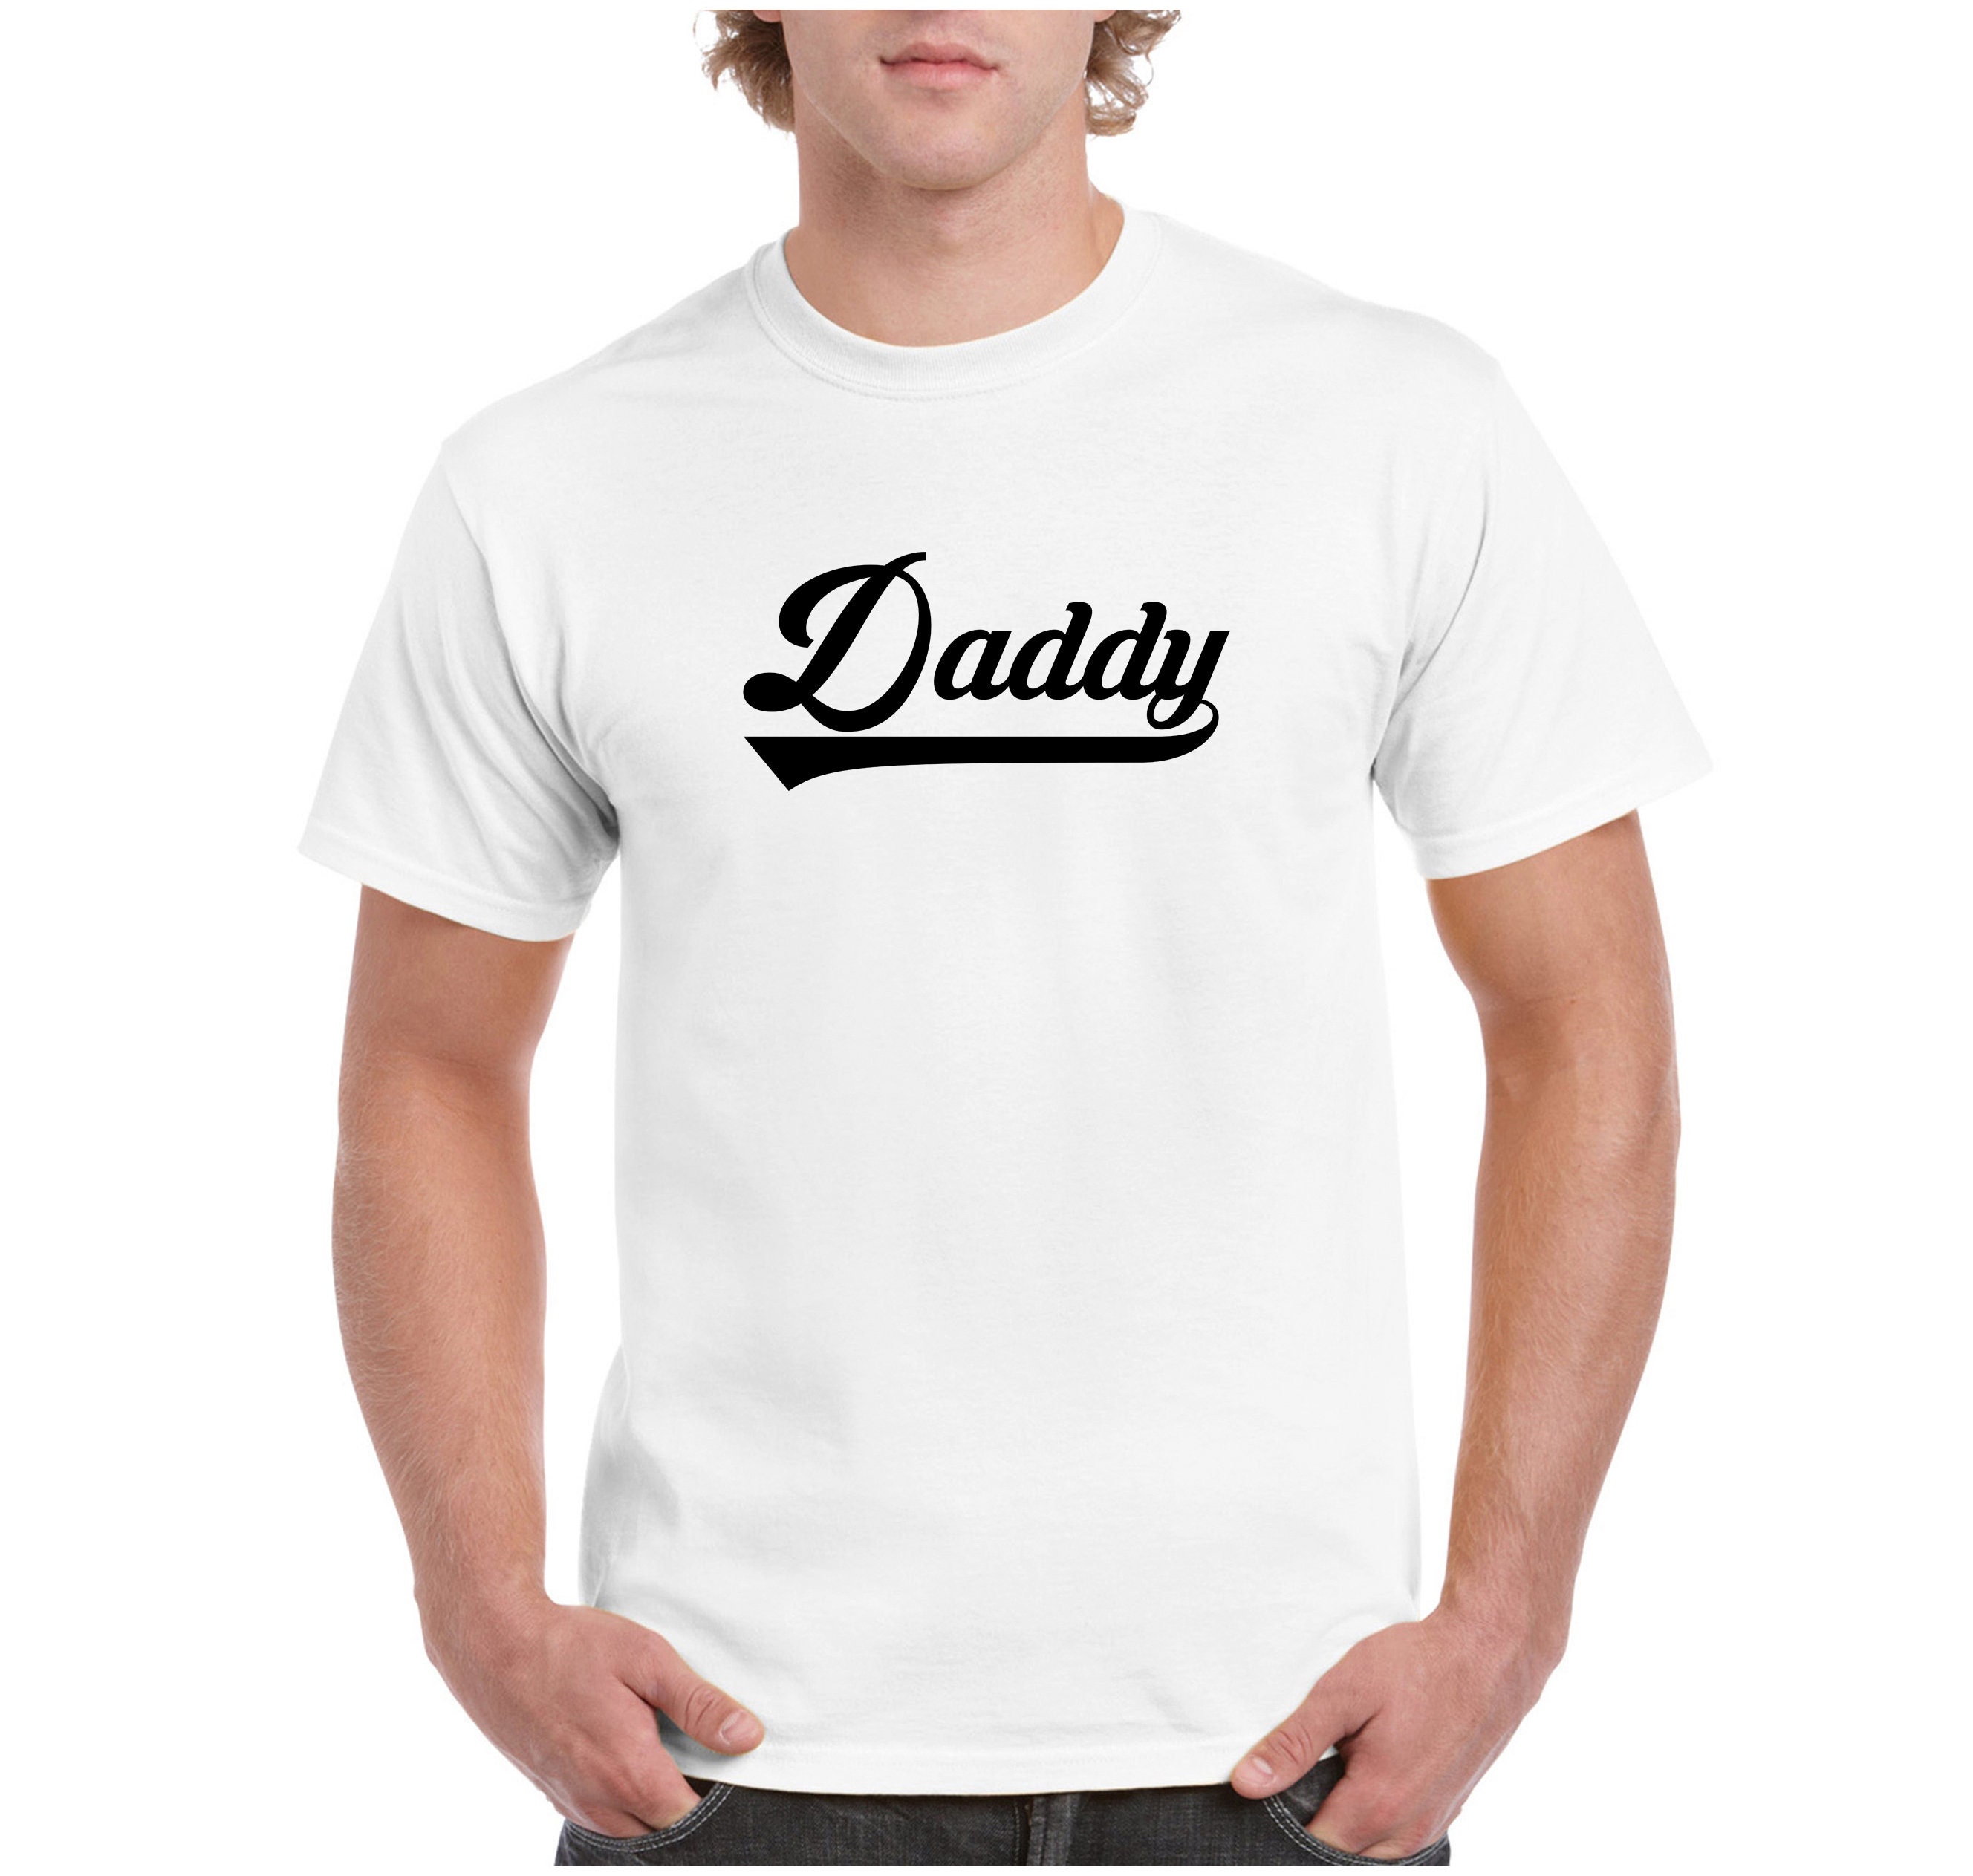 Daddy T-Shirt Tanktop Cami or Hoodie BDSM Kinky Daddy DDbg Dom | Etsy